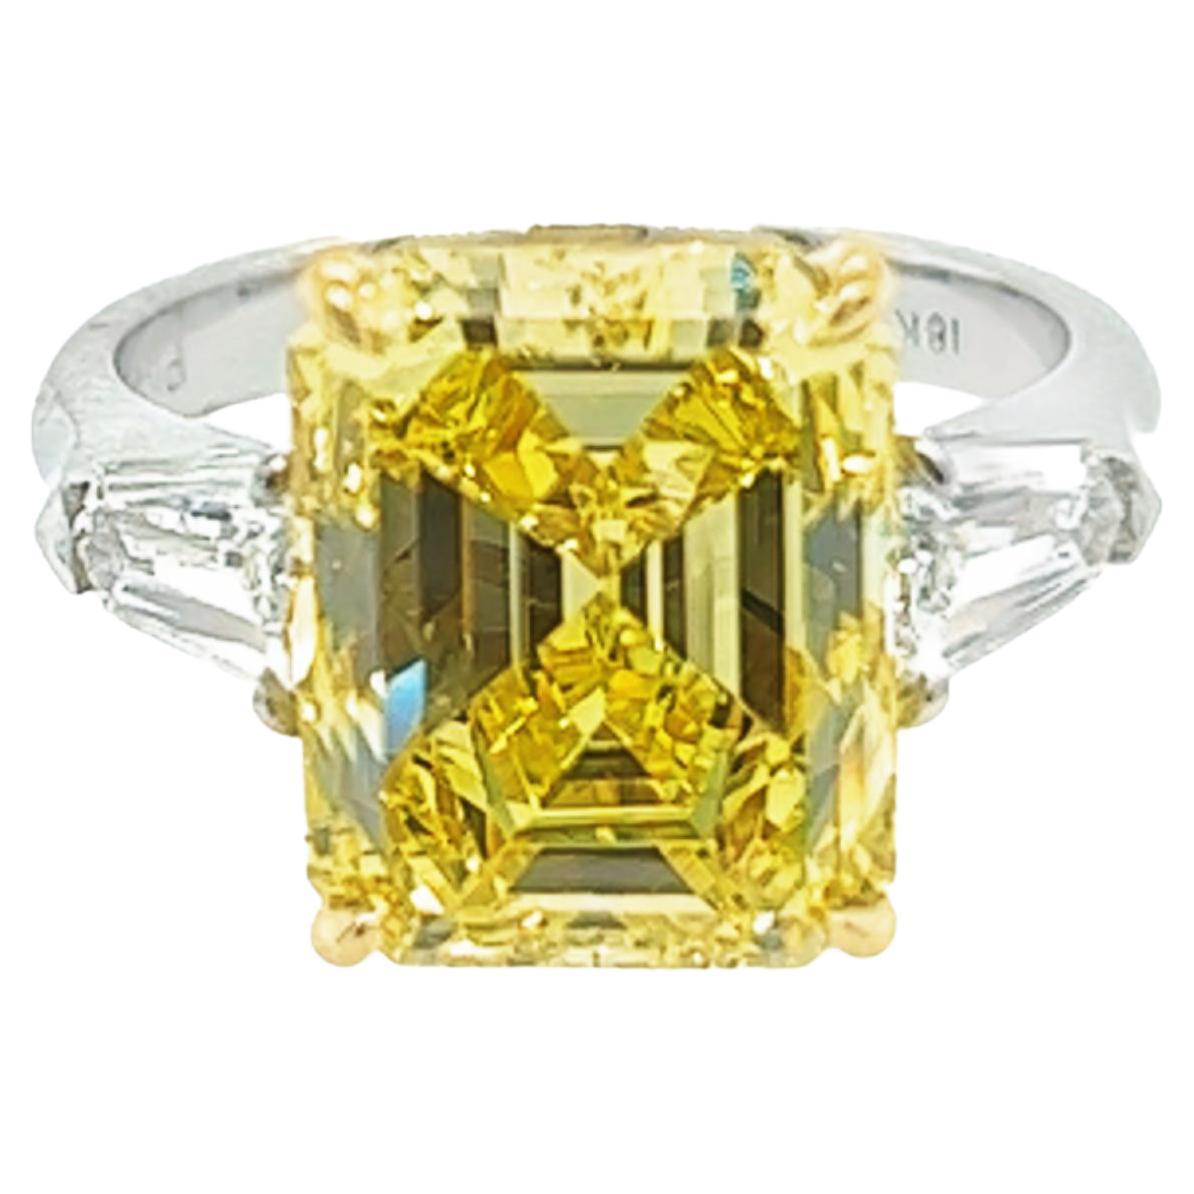 Verlobungsring mit 6,40 Karat Smaragd, leuchtend gelber GIA-Diamant